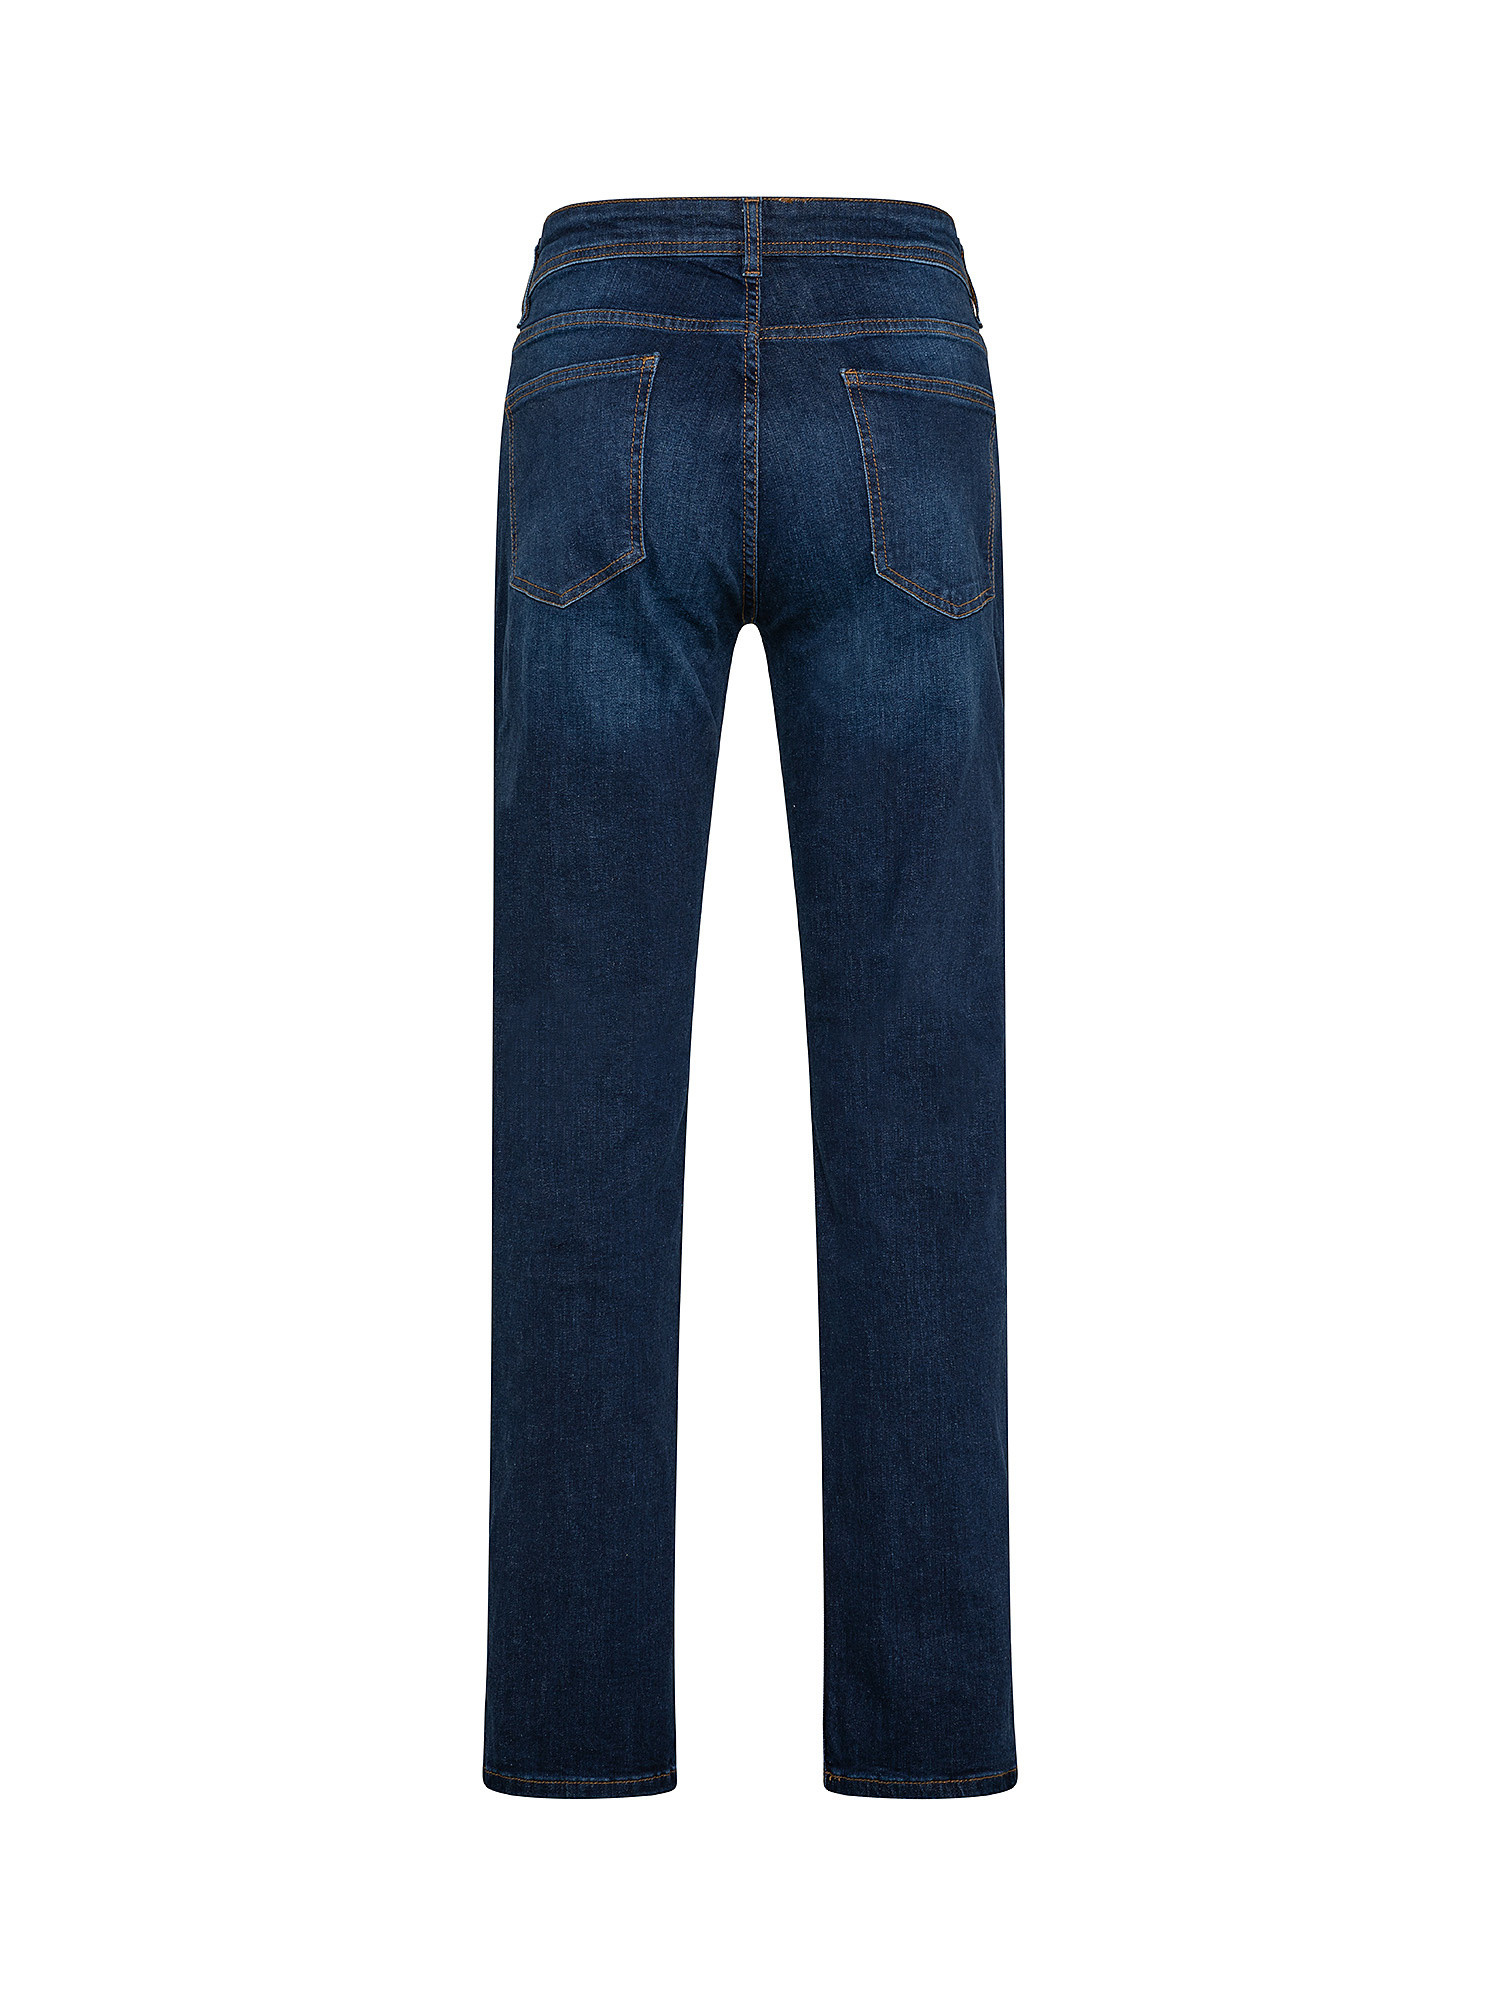 5-pocket slim stretch cotton jeans, Dark Blue, large image number 1